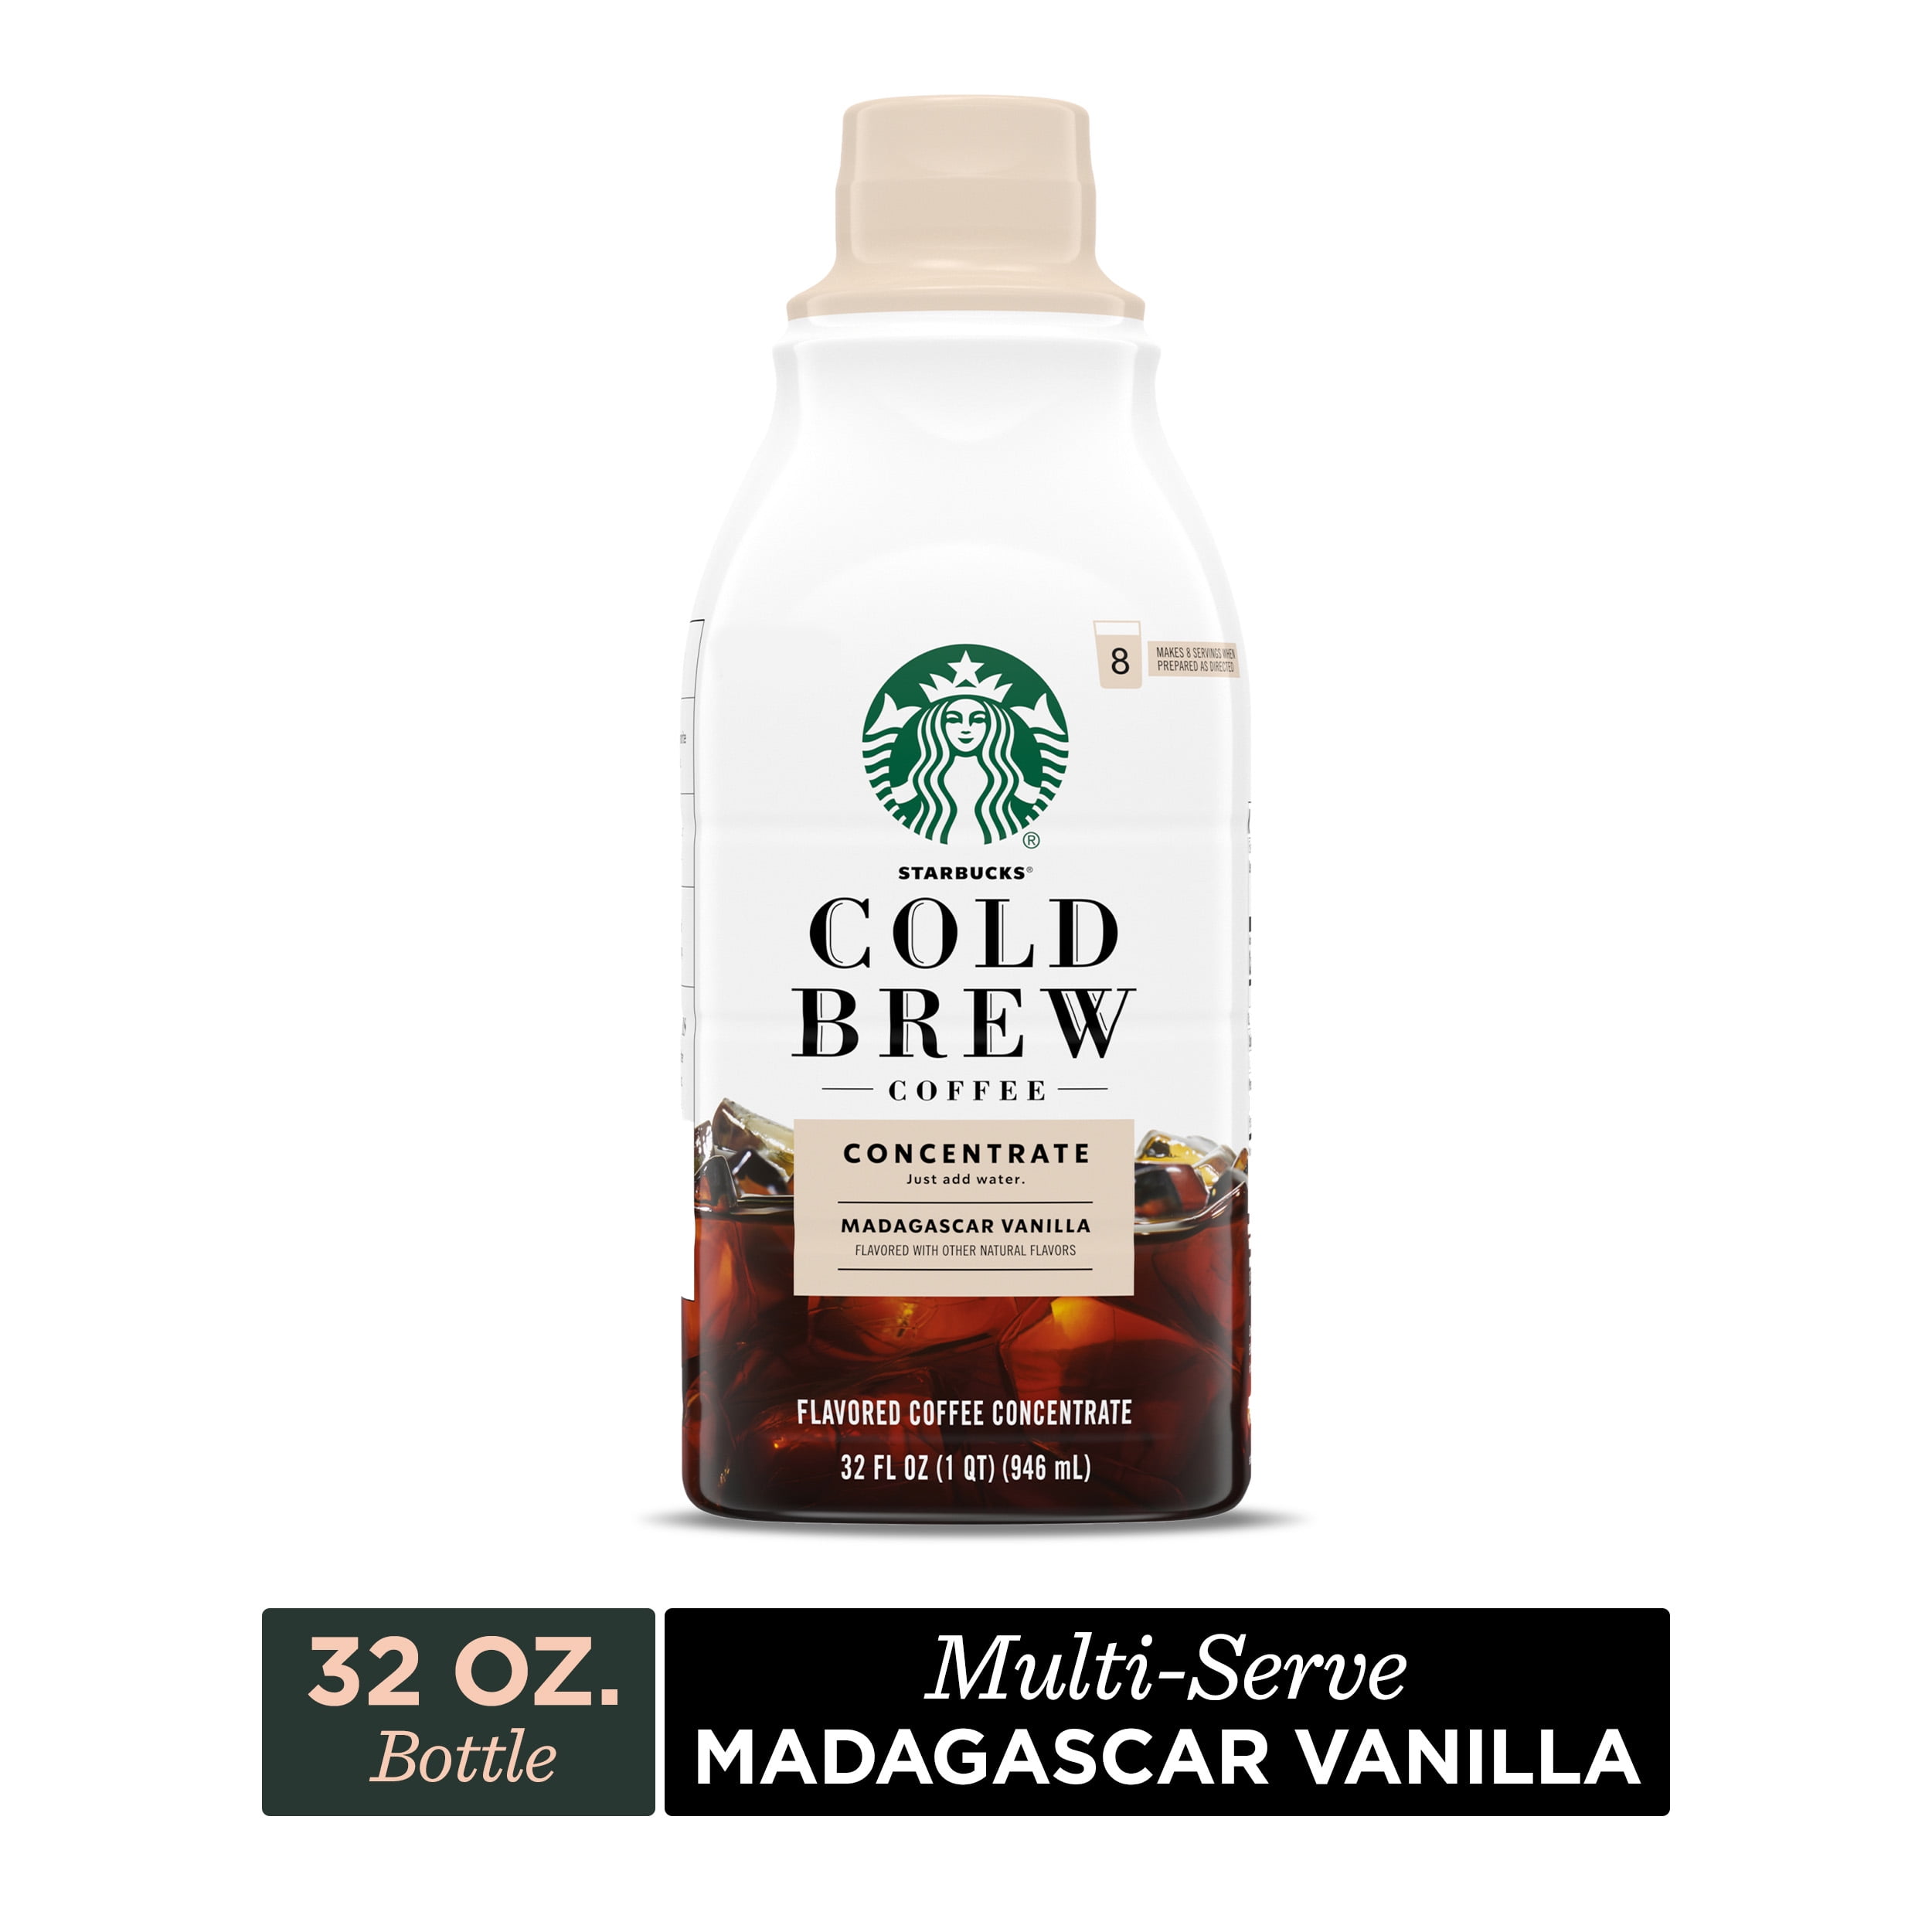 Starbucks Cold Brew Coffee, Madagascar Vanilla Flavored, Multi-Serve Concentrate, 32 oz